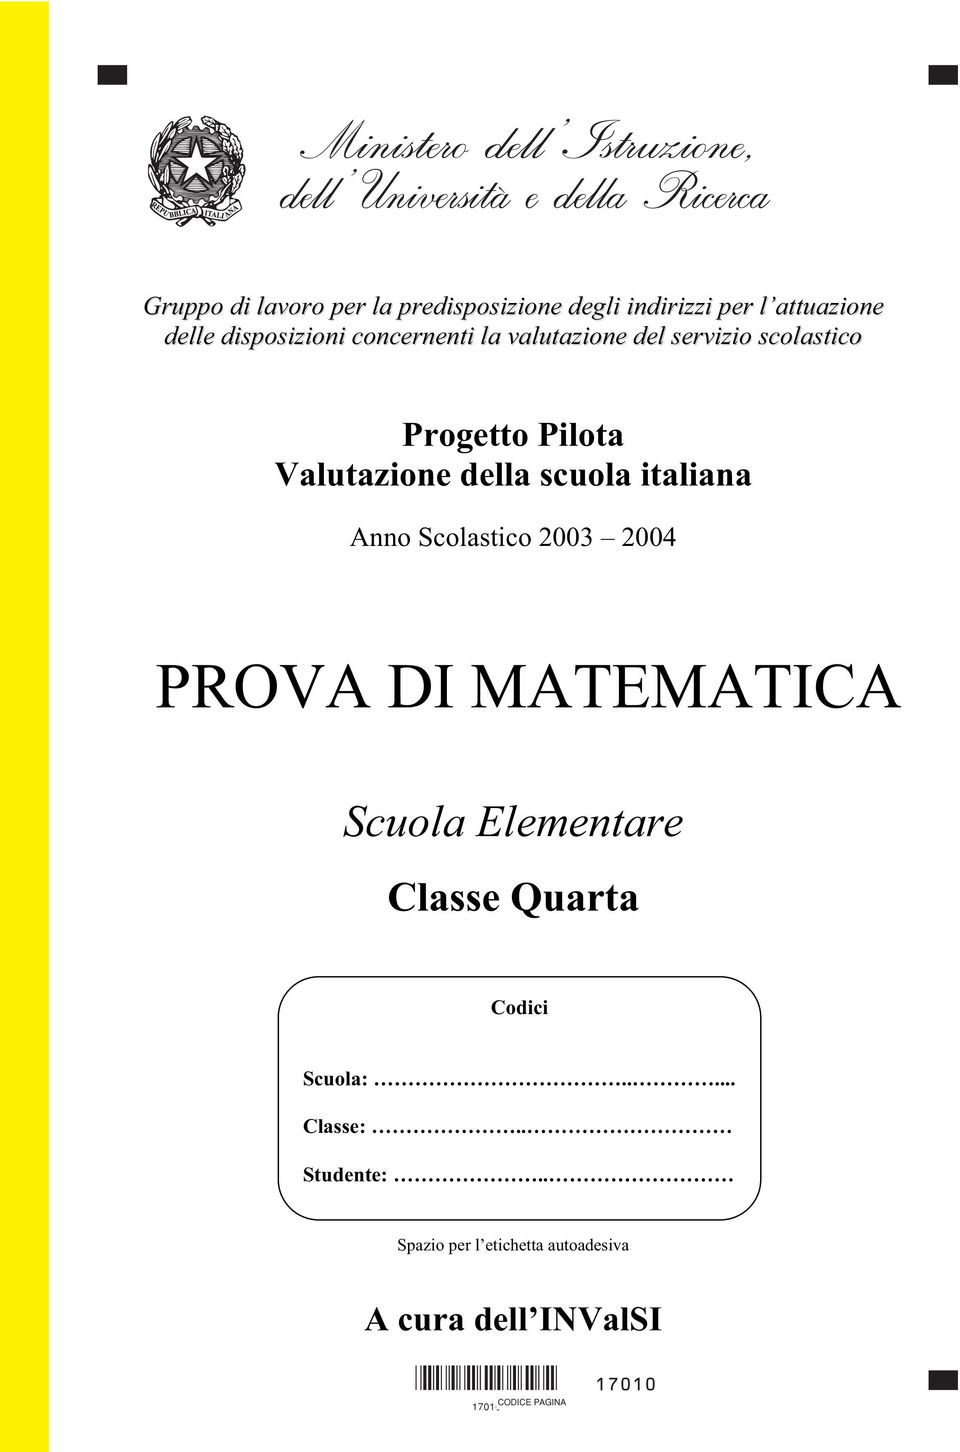 Scolastico 2003 2004 PROVA DI MATEMATICA Scuola Elementare Classe Quarta Codici Codici Scuola:..... Scuola:..... Classe:.. Classe:.. Studente:.